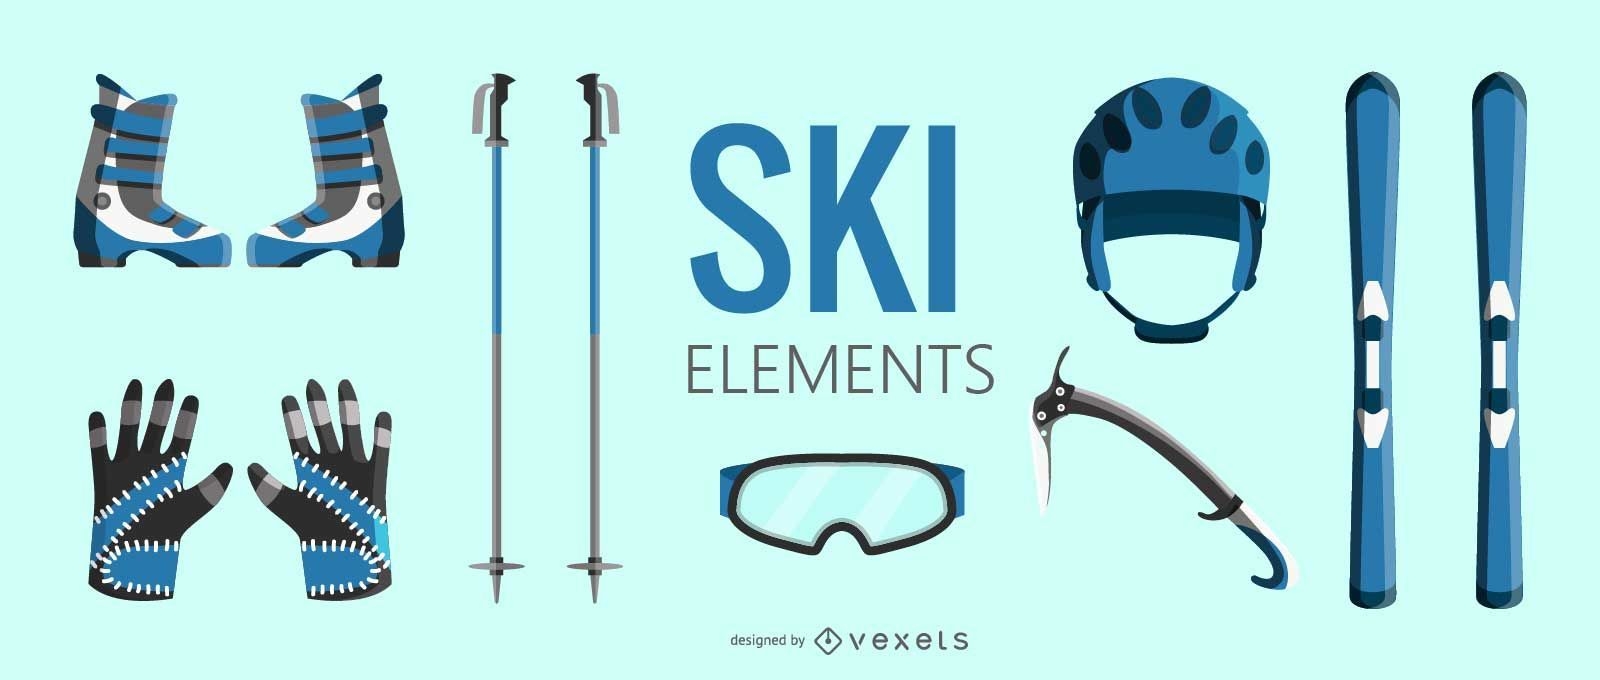 Ski equipment elements set